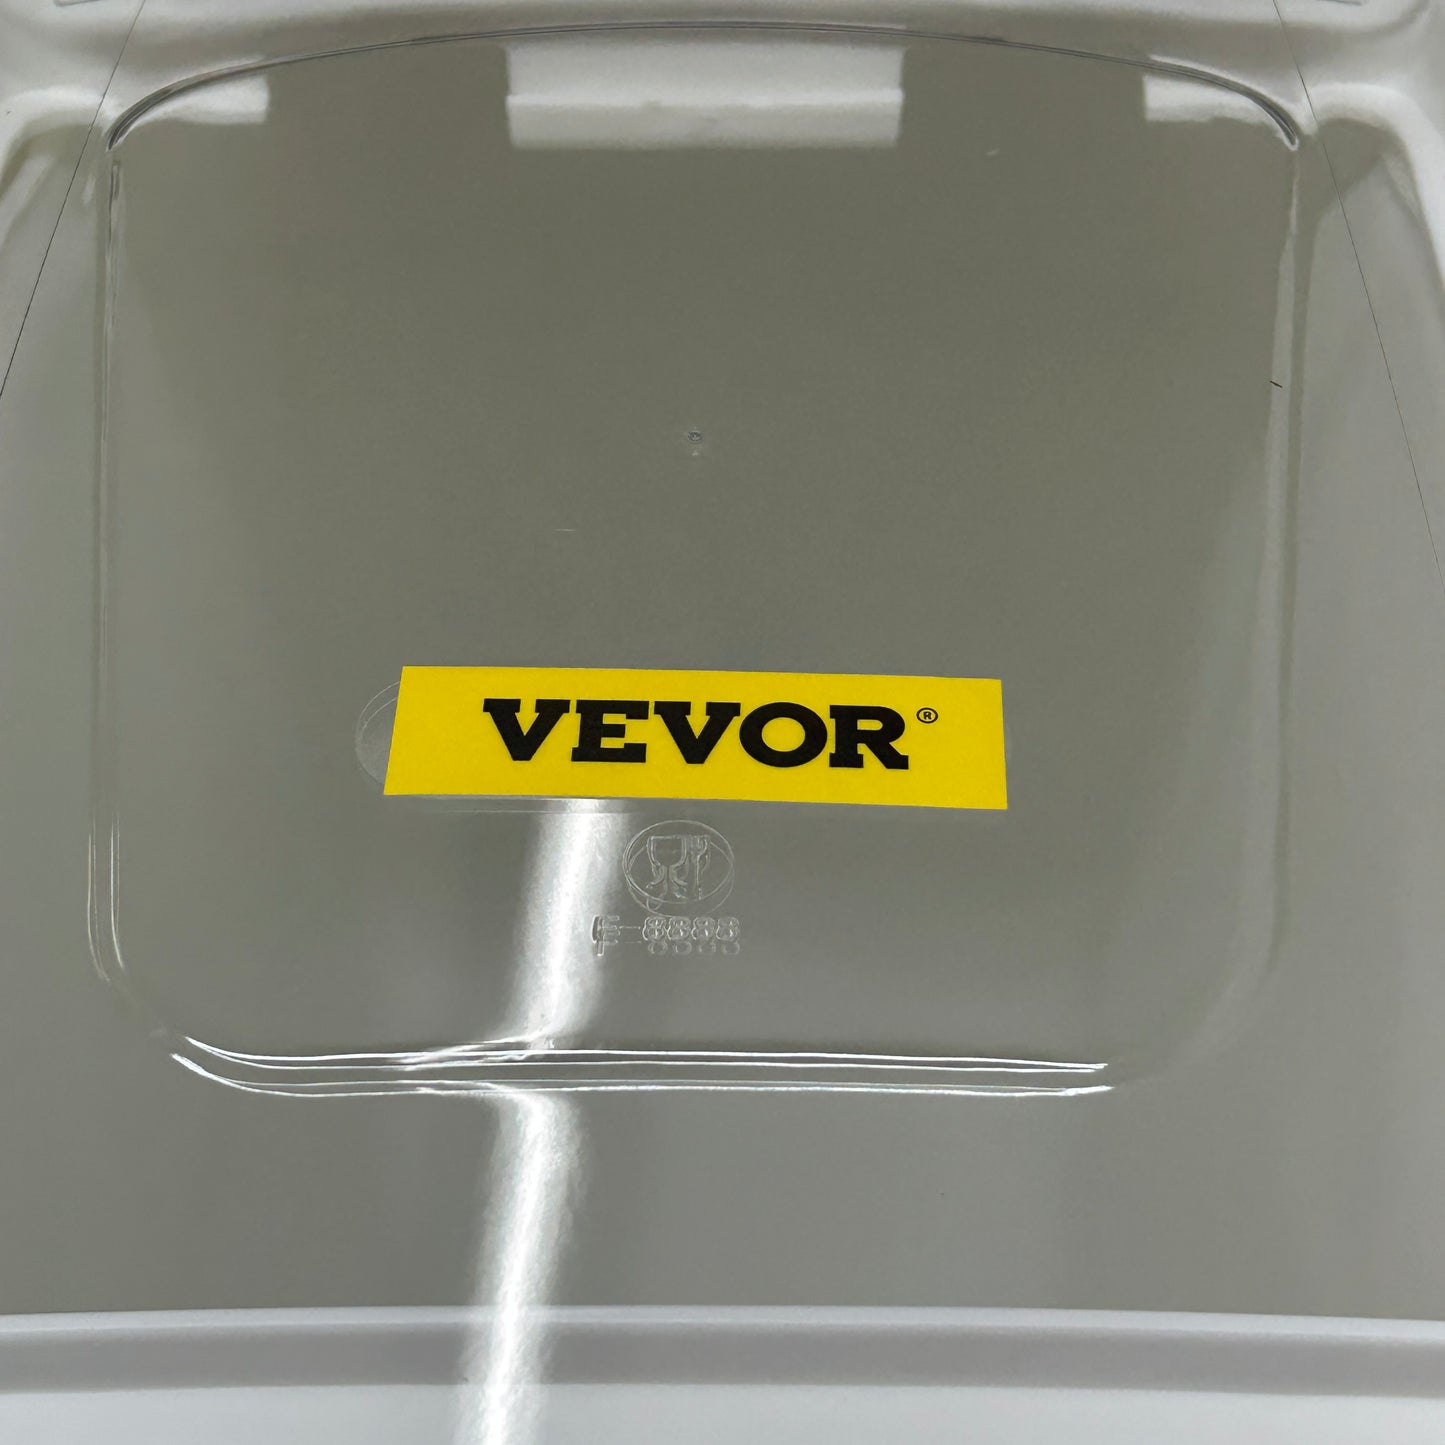 VEVOR 21 Gallon Ingredient Bin with Scoop (New)